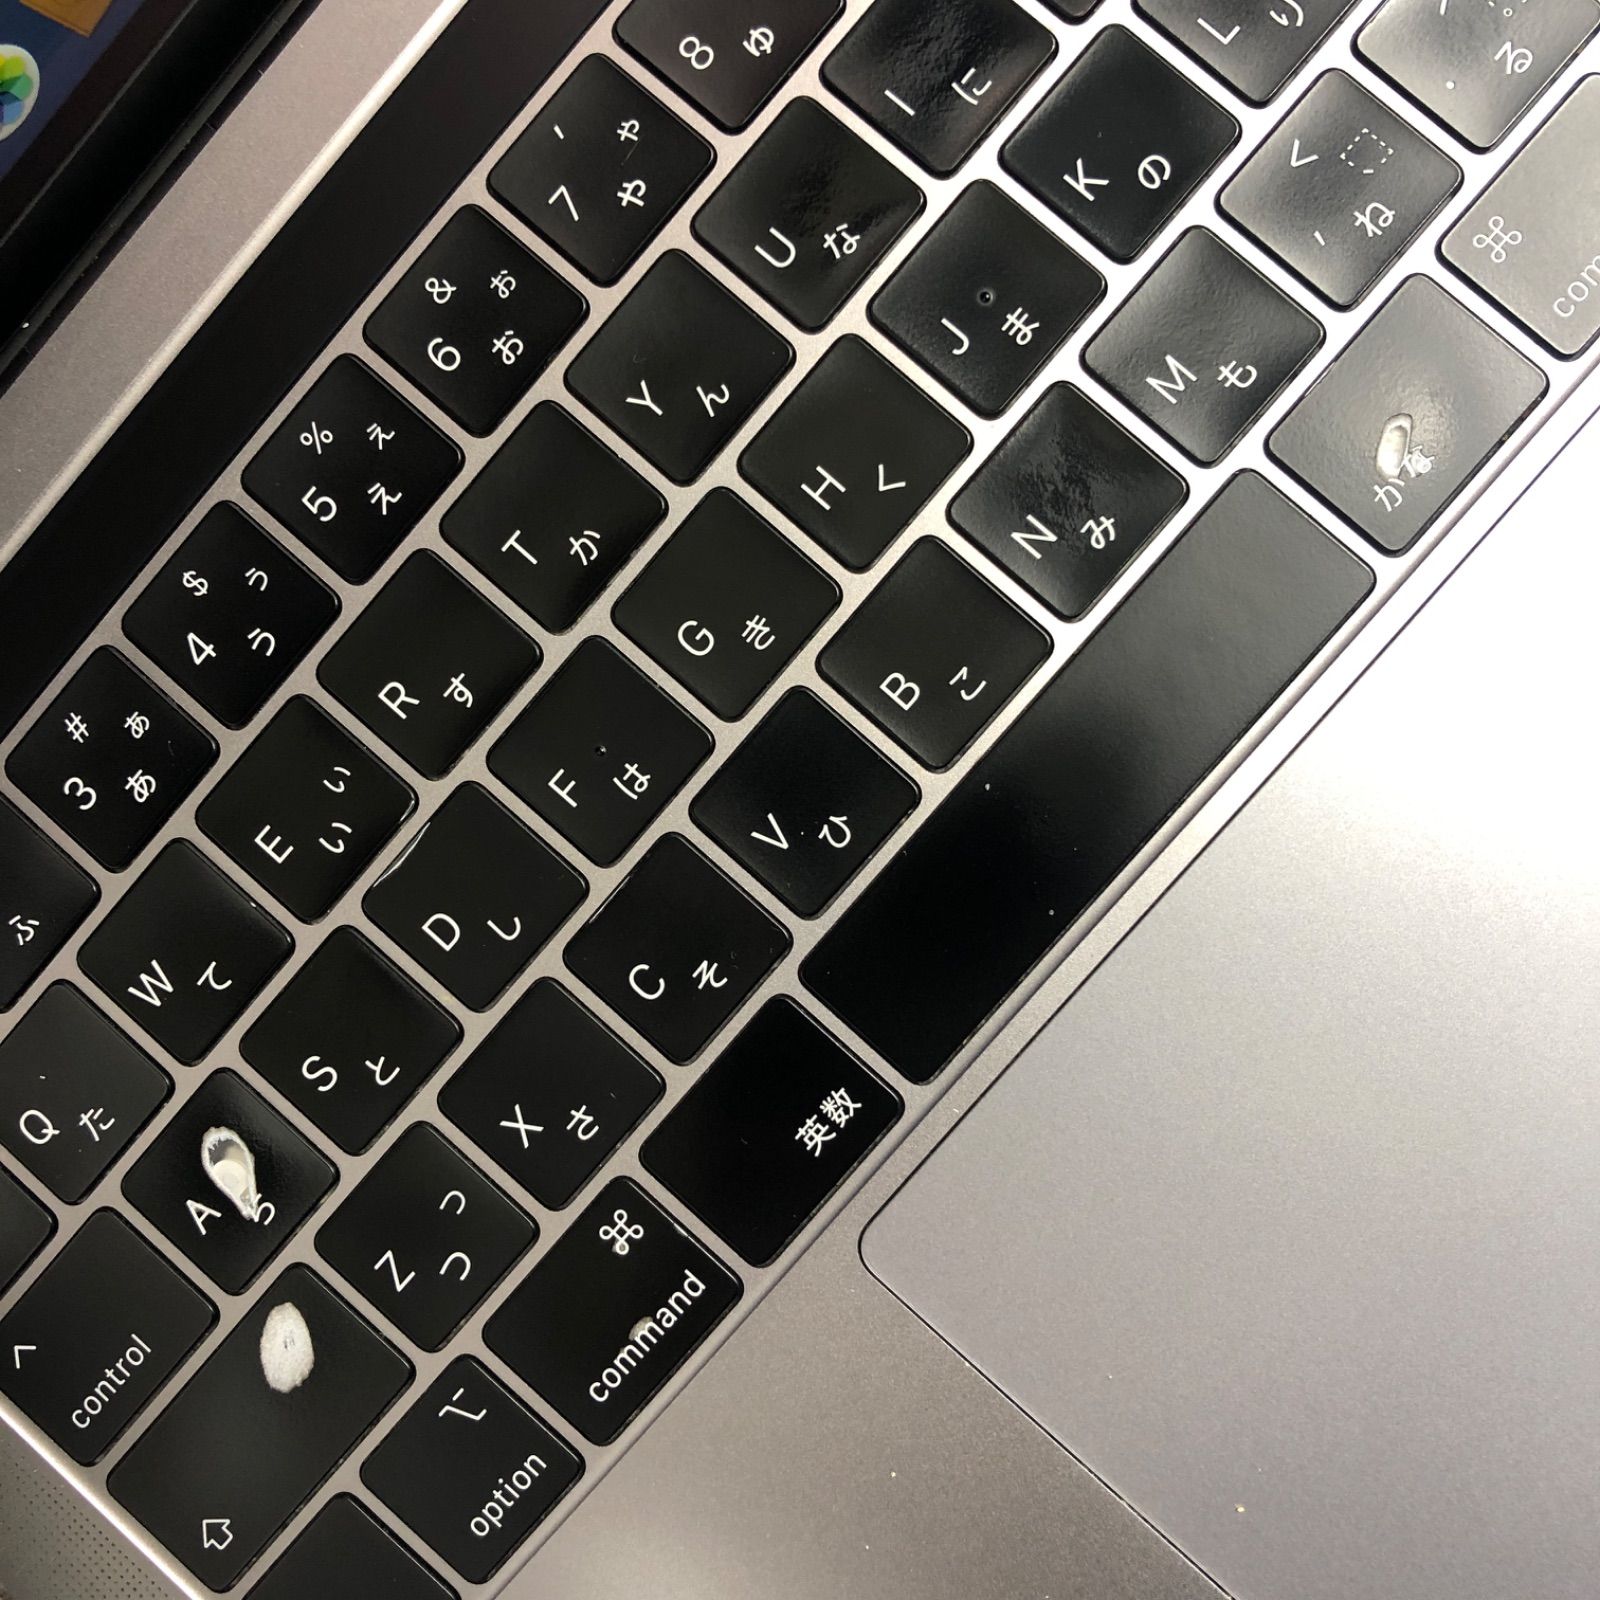 ◇ジャンク品・本体のみ◇Apple MacBook Pro (13インチ, 2018 